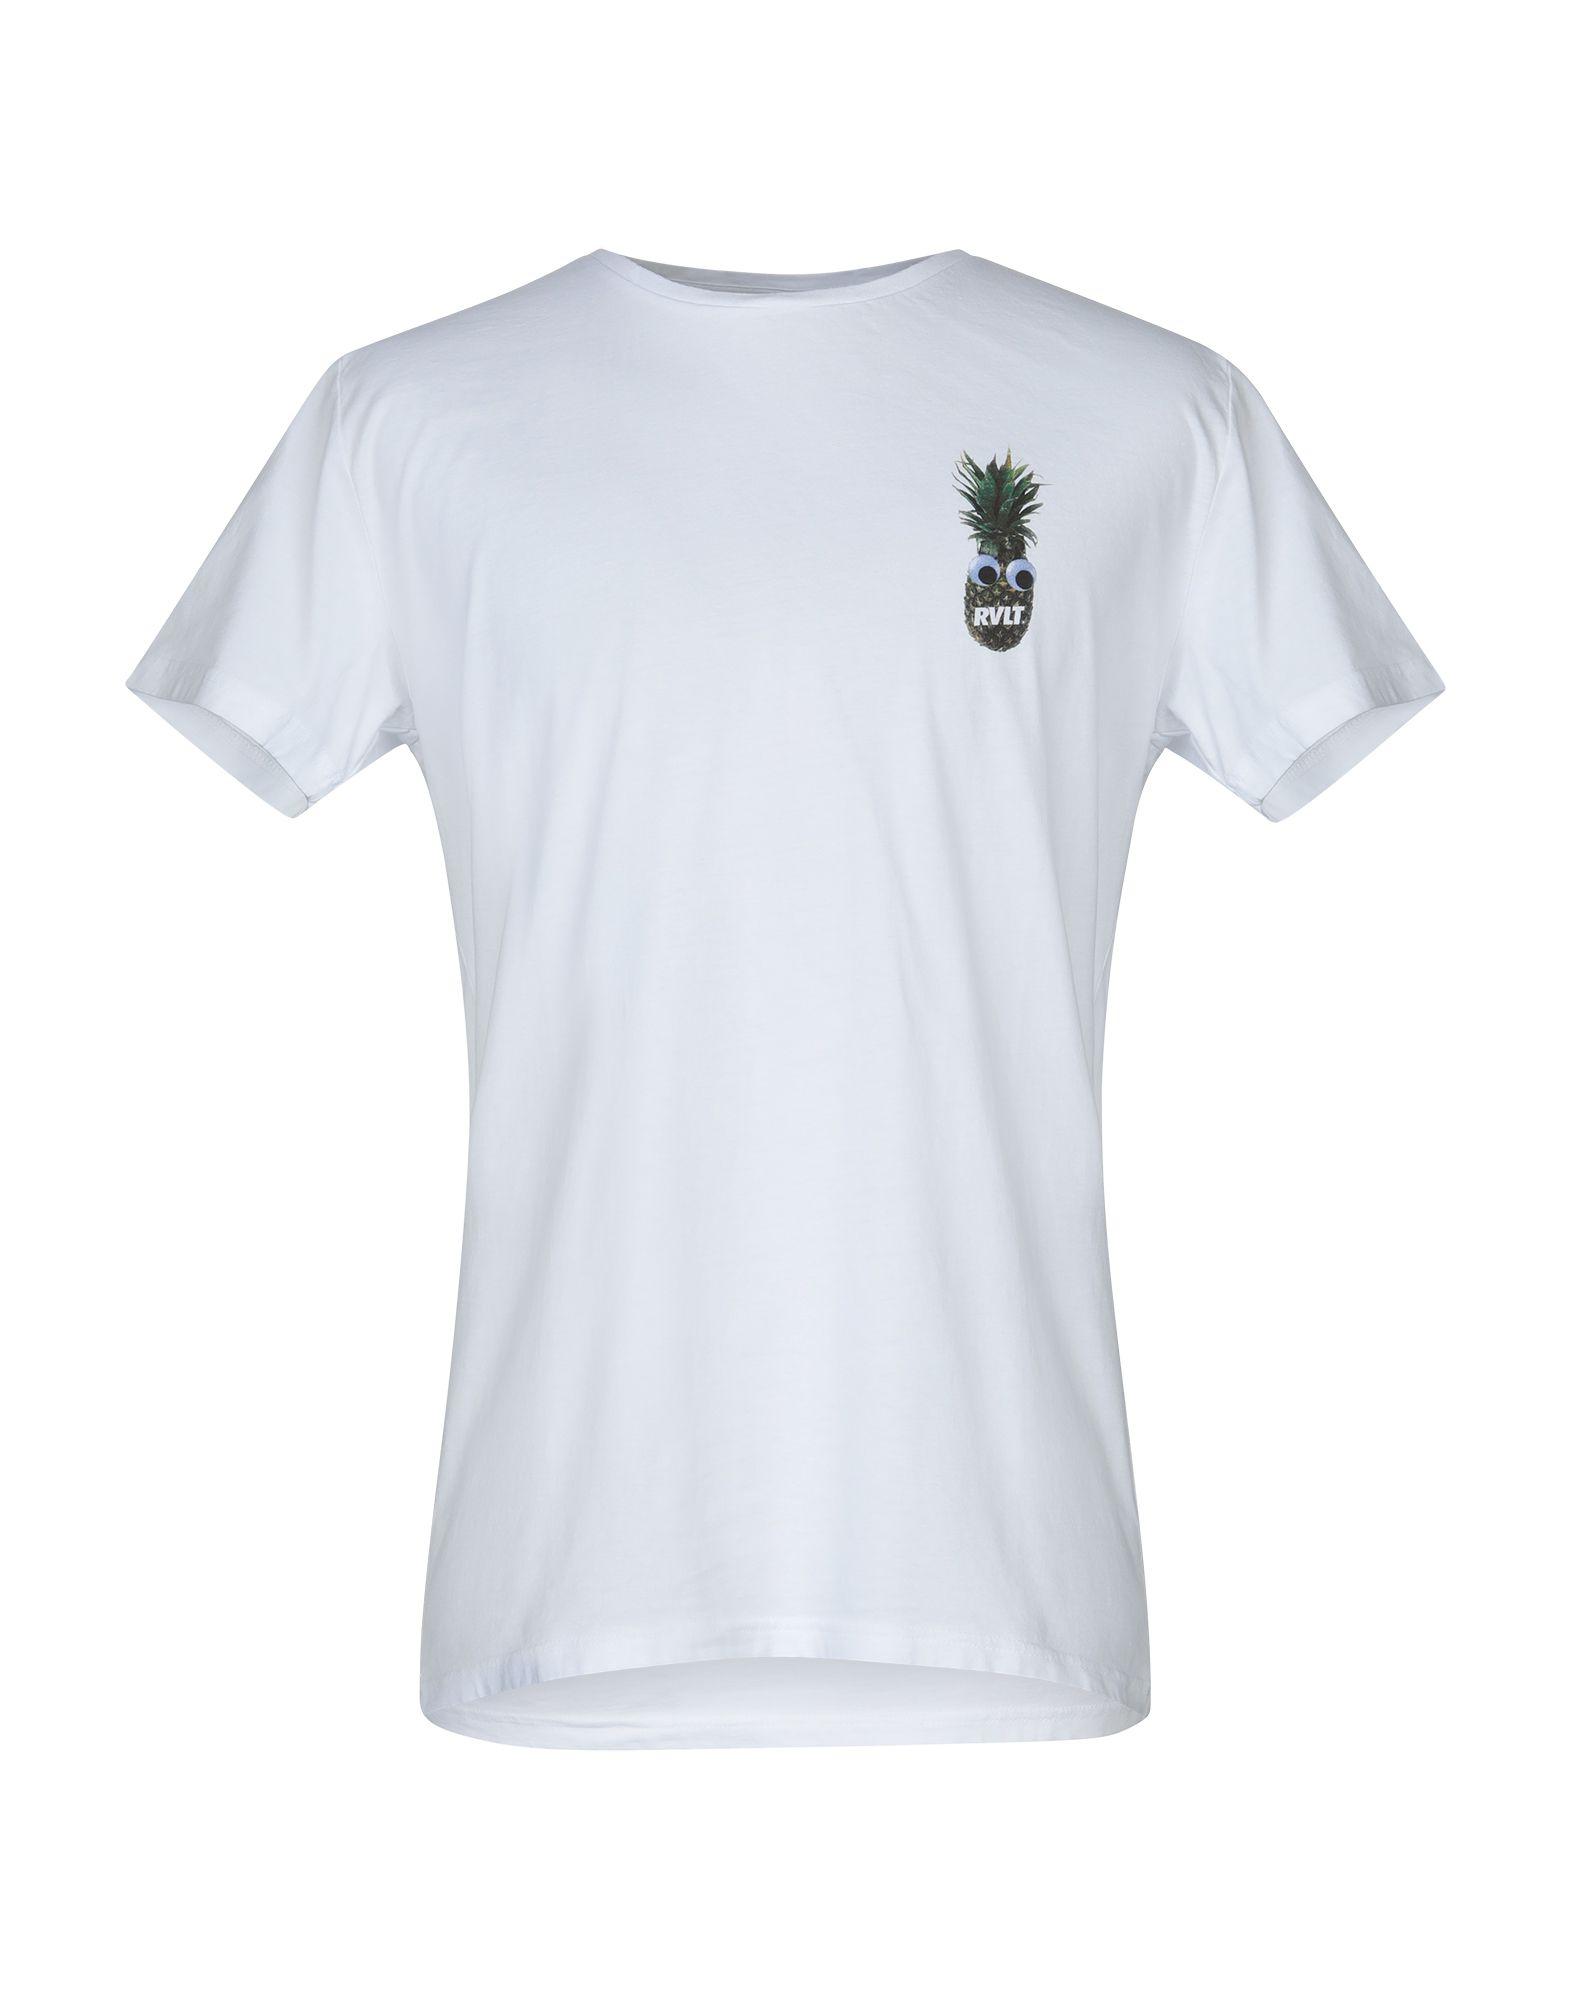 RVLT T-shirt in White for Men - Lyst